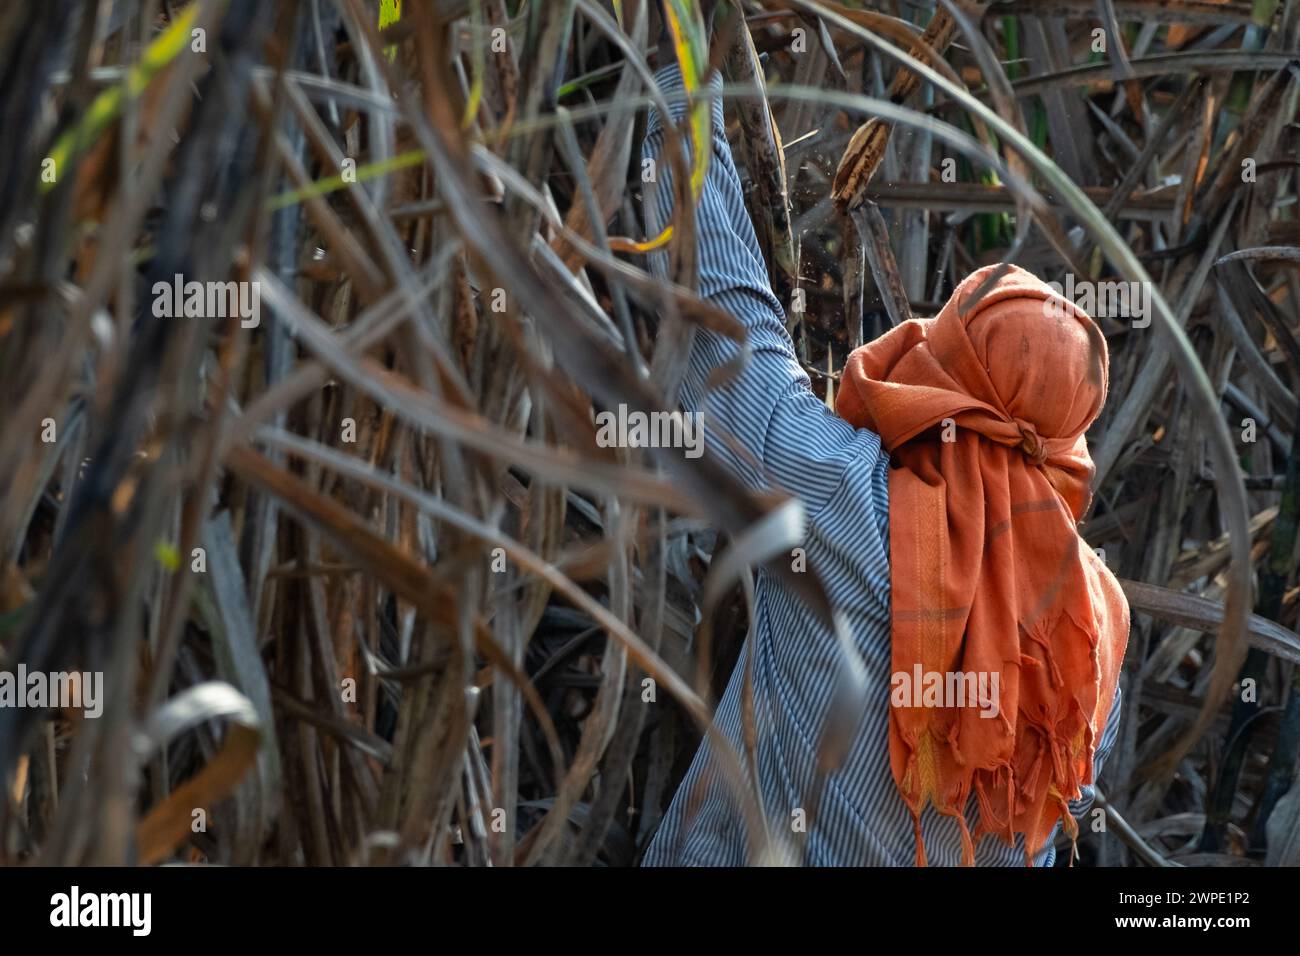 coltivatore di canna da zucchero nel campo della canna da zucchero, operai che raccolgono la piantagione di canna da zucchero nella stagione del raccolto, operai che tagliano la canna da zucchero nei campi di canna da zucchero. Foto Stock